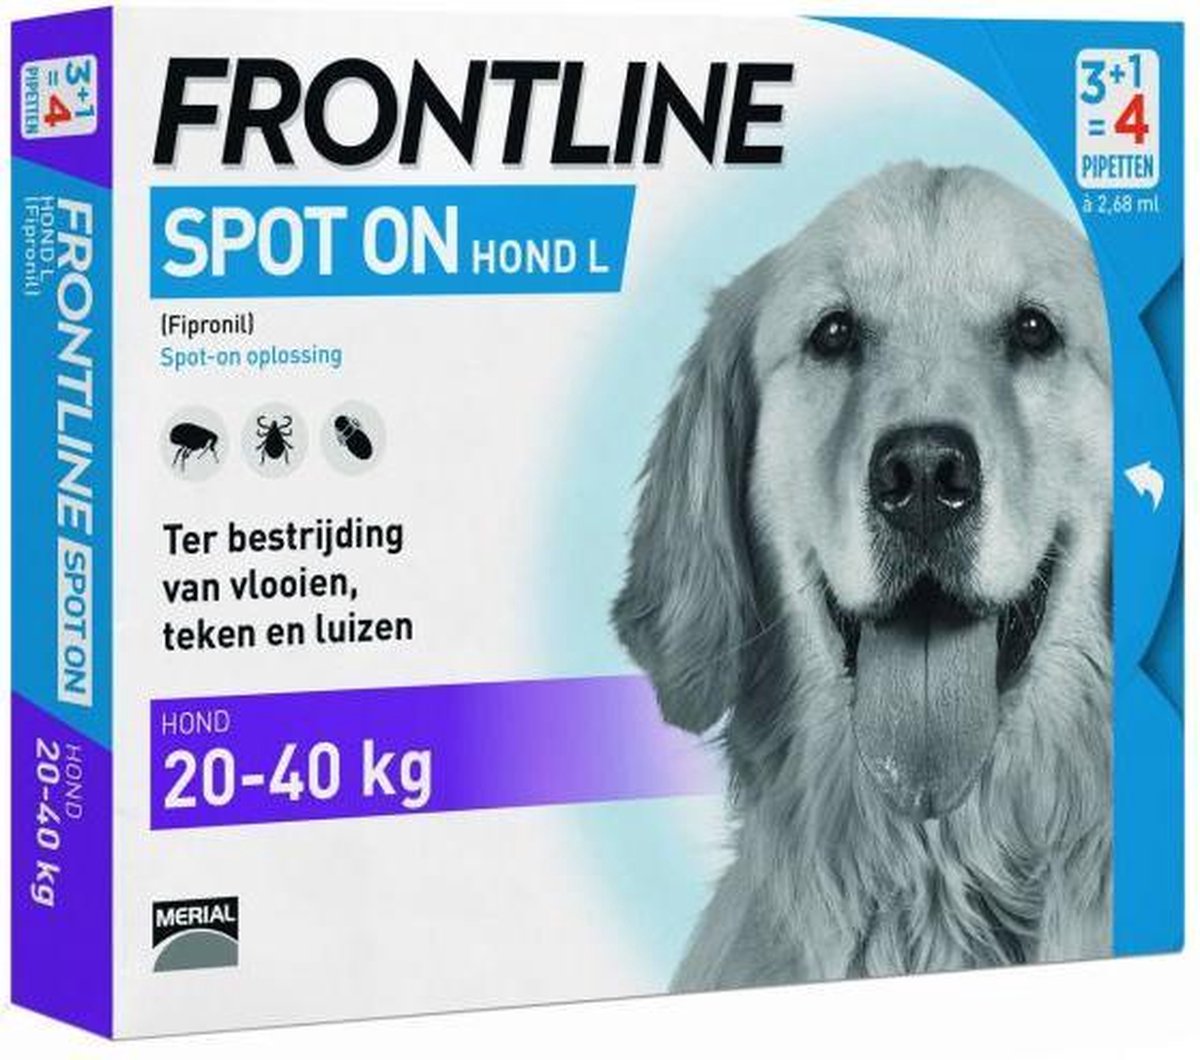 Huiskamer Abstractie bespotten Frontline Spot-On L Anti vlooienmiddel - Hond - 4 pipetten | bol.com